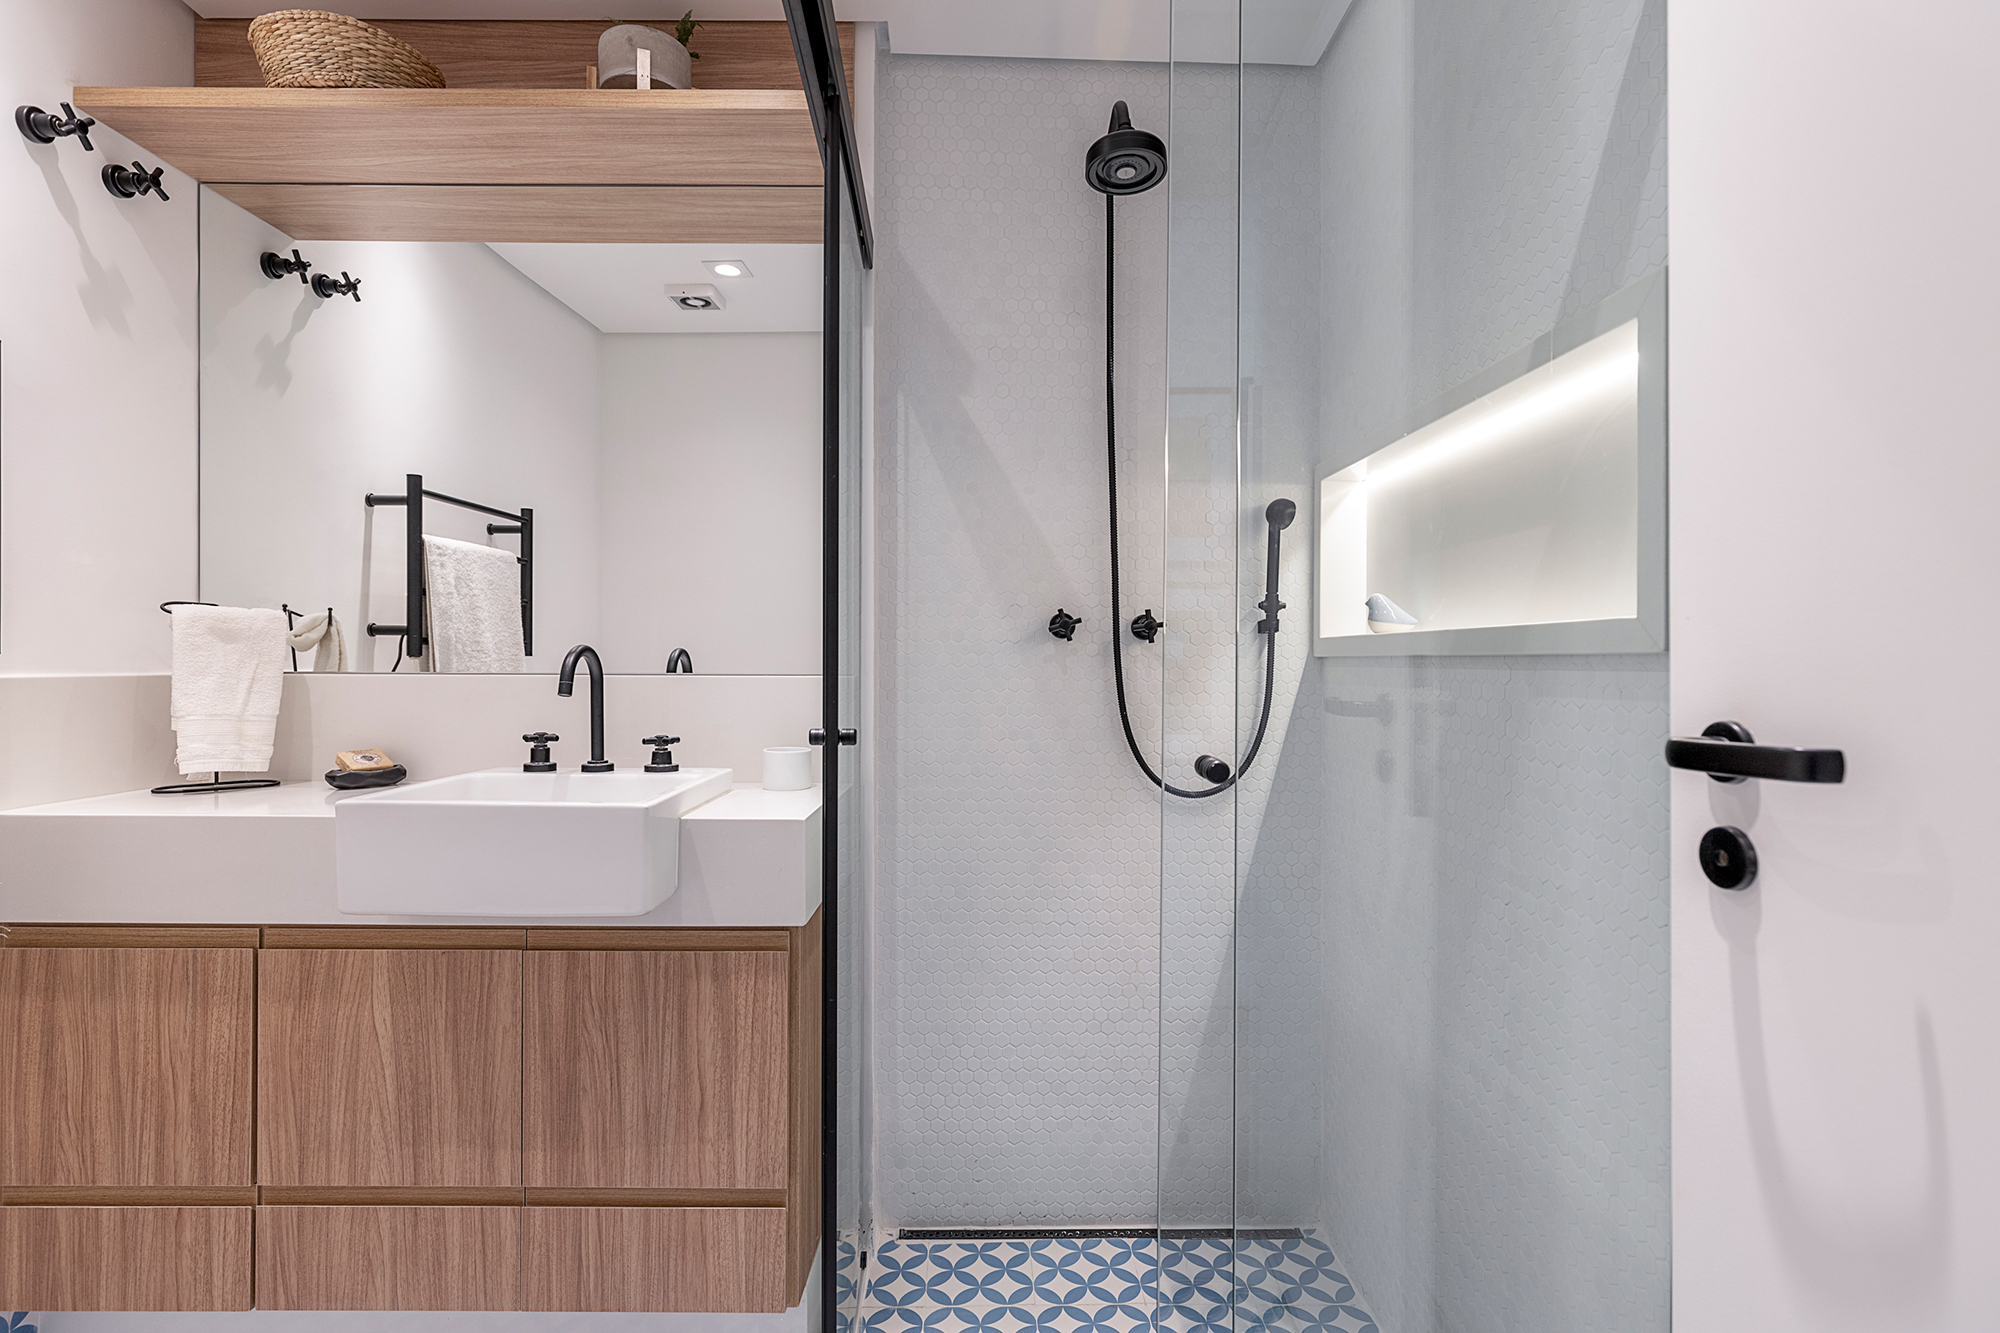 Apartamento dos anos 1950 une charme, história e cores em 128 m². Projeto de Ju Matos Arquitetura. Na foto, banheiro com piso geométrico azul e box de serralheria.